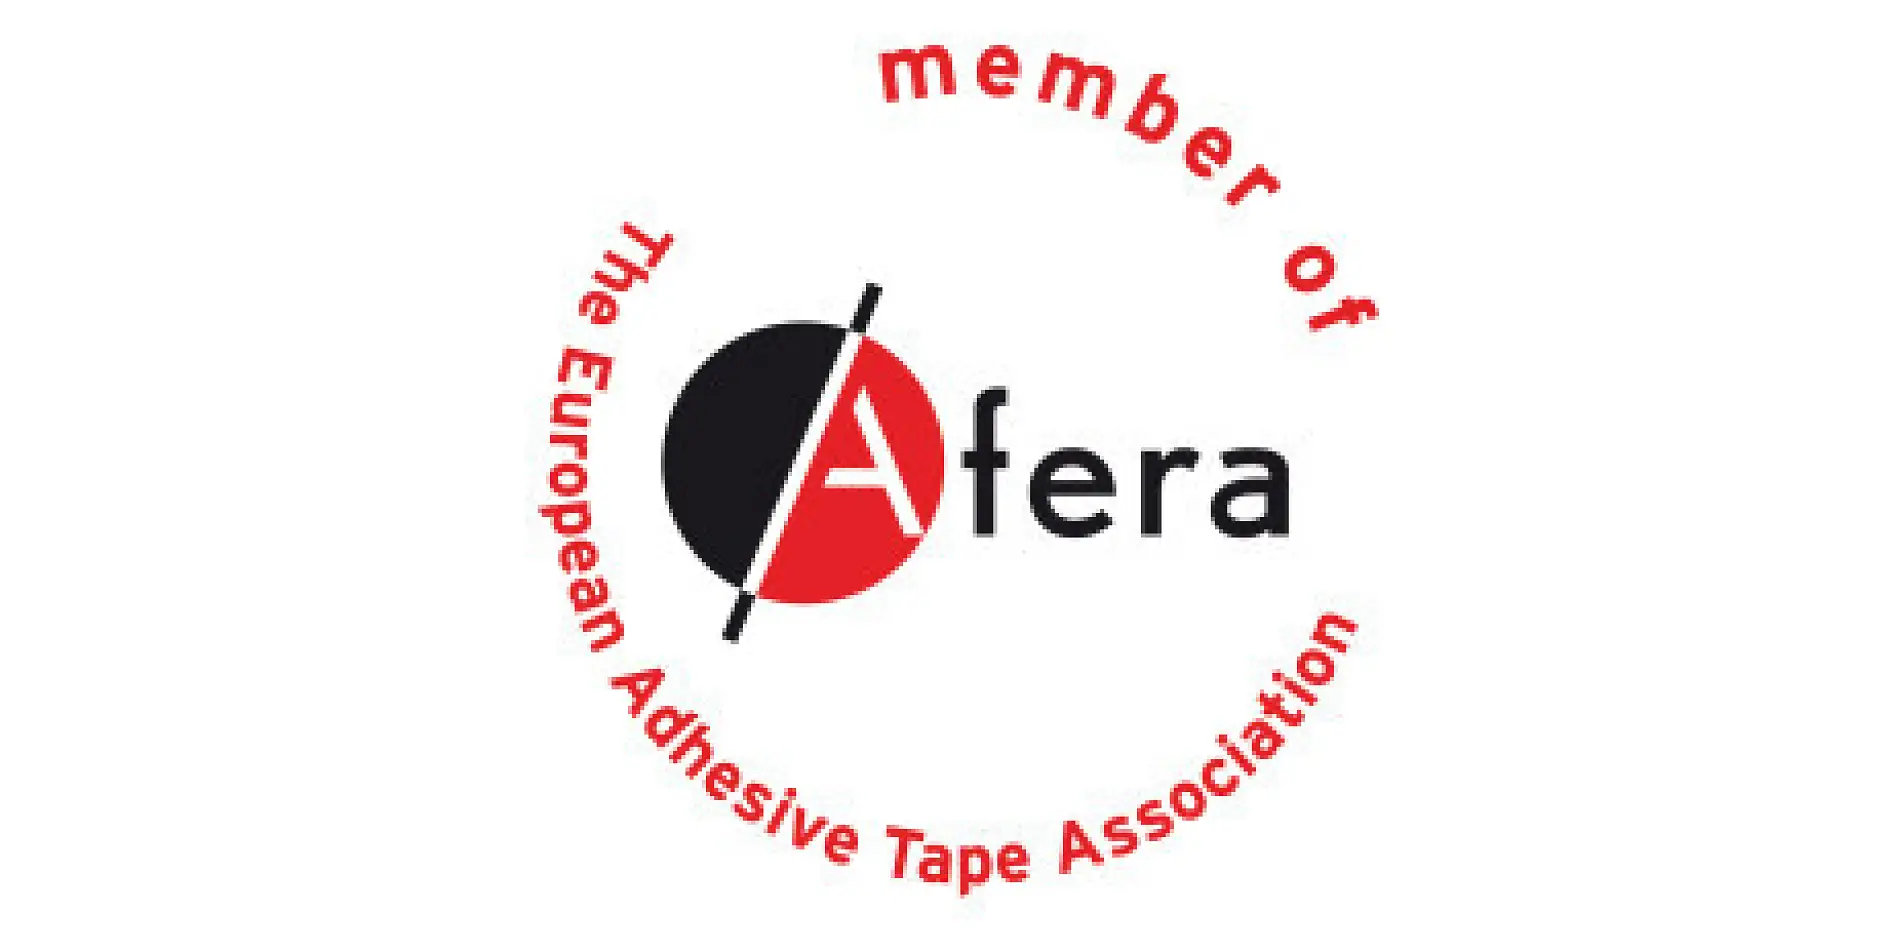 tesa เป็นสมาชิกของ Afera - สมาคมเทปกาวแห่งยุโรป ผู้ที่เป็นสมาชิก ได้แก่ ผู้ผลิต ผู้จัดส่งวัตถุดิบและเครื่องจักร ผู้แปรรูป (เช่น ผู้พิมพ์ ผู้กรีดเฉือน ผู้ตัด และผู้ทำแผ่นบางของเทปกาว) และองค์กรเทปภายในประเทศ